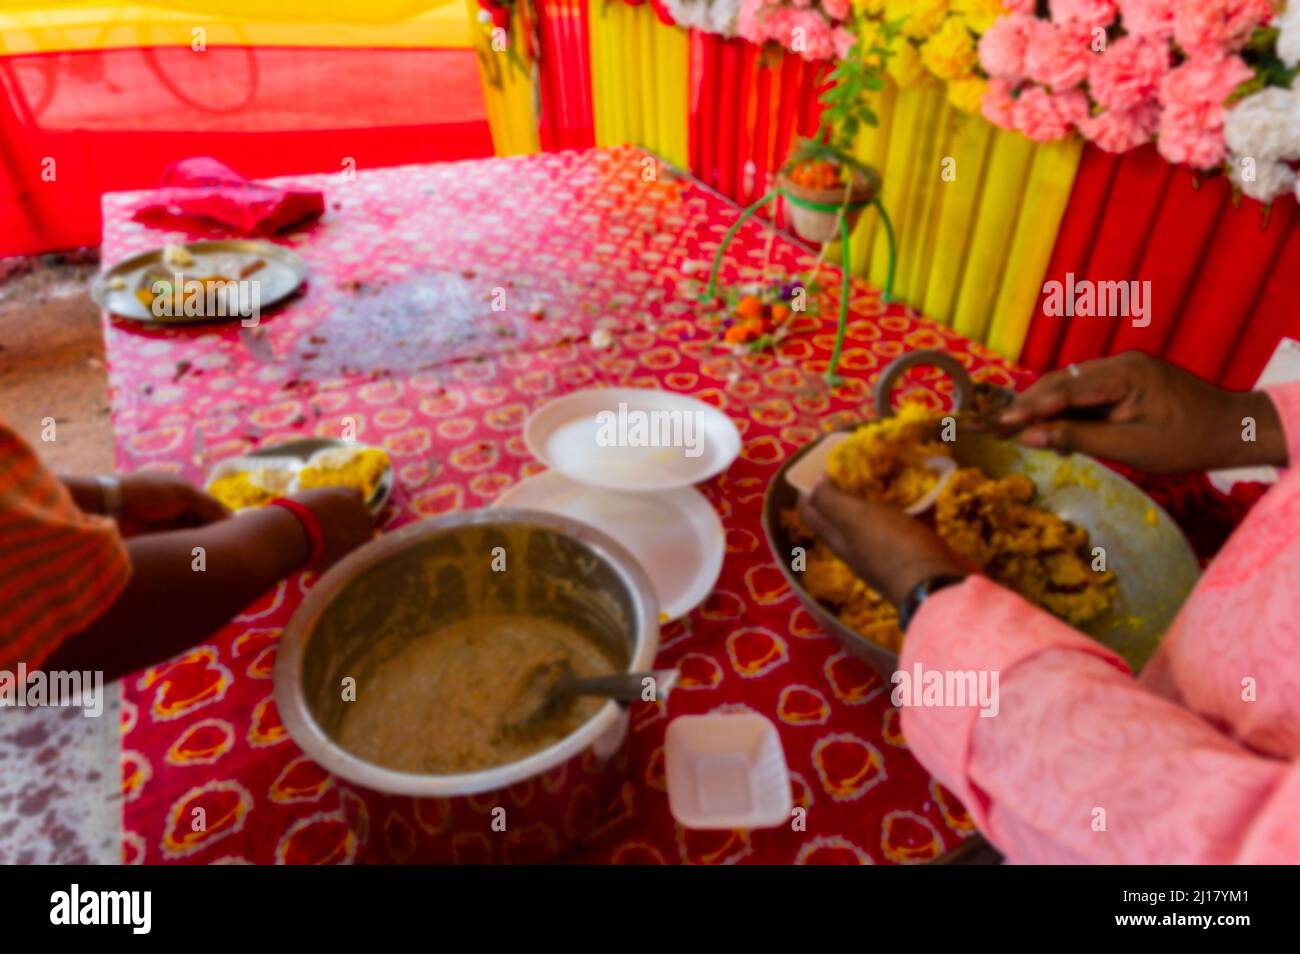 Image floue de Howrah, Bengale-Occidental, Inde. VOG, prasad, ou la nourriture sacrée adorée, étant distribuée aux dévotés, après adoration idole de Dieu. Banque D'Images